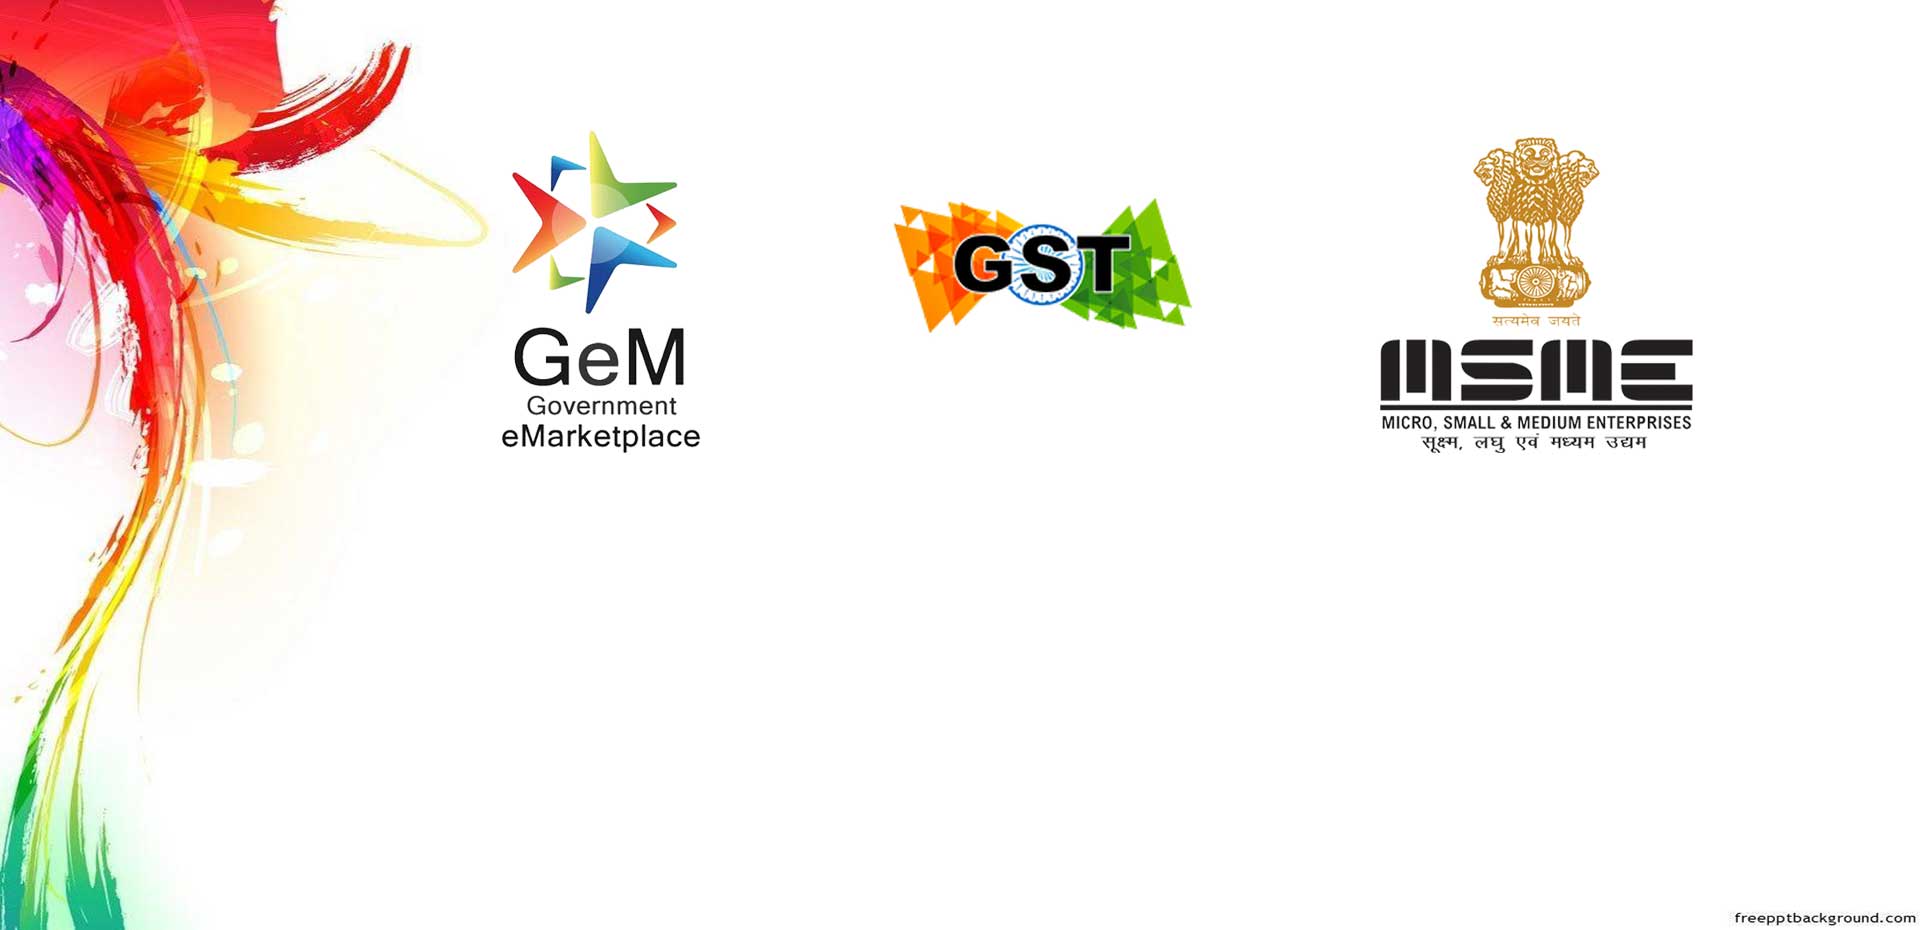 MSME and Gem Registered Enterprise